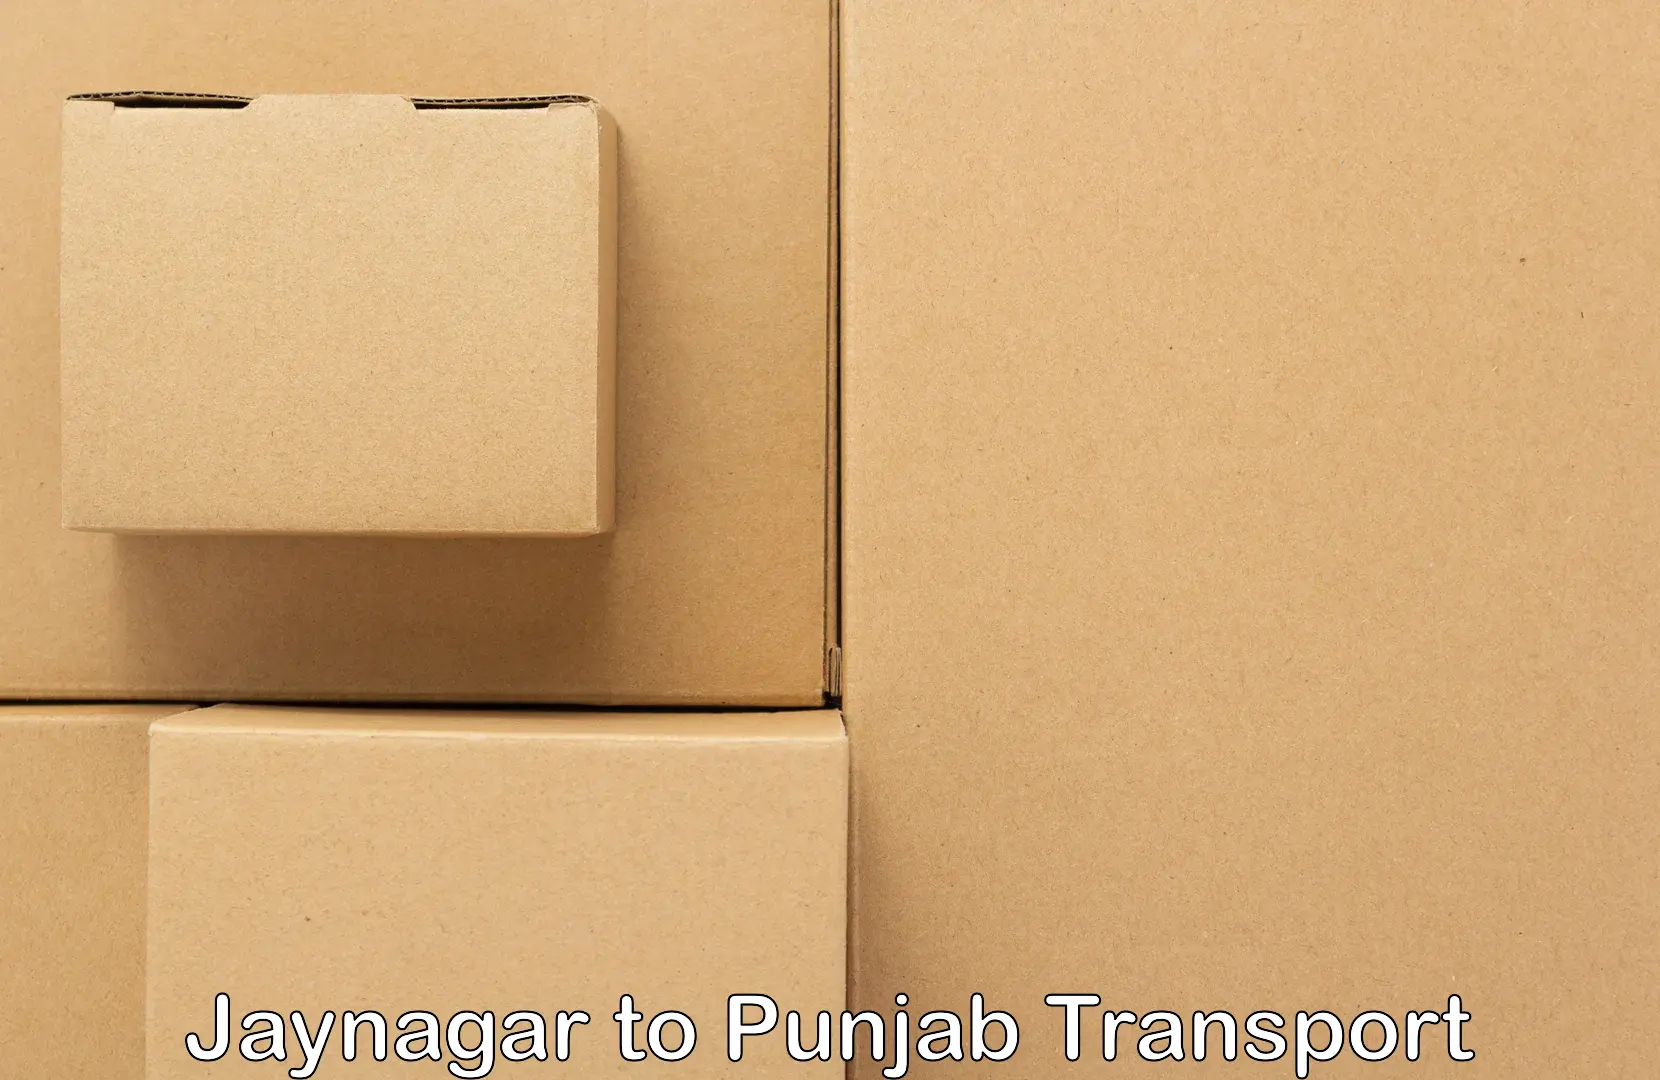 Cargo train transport services Jaynagar to Amritsar